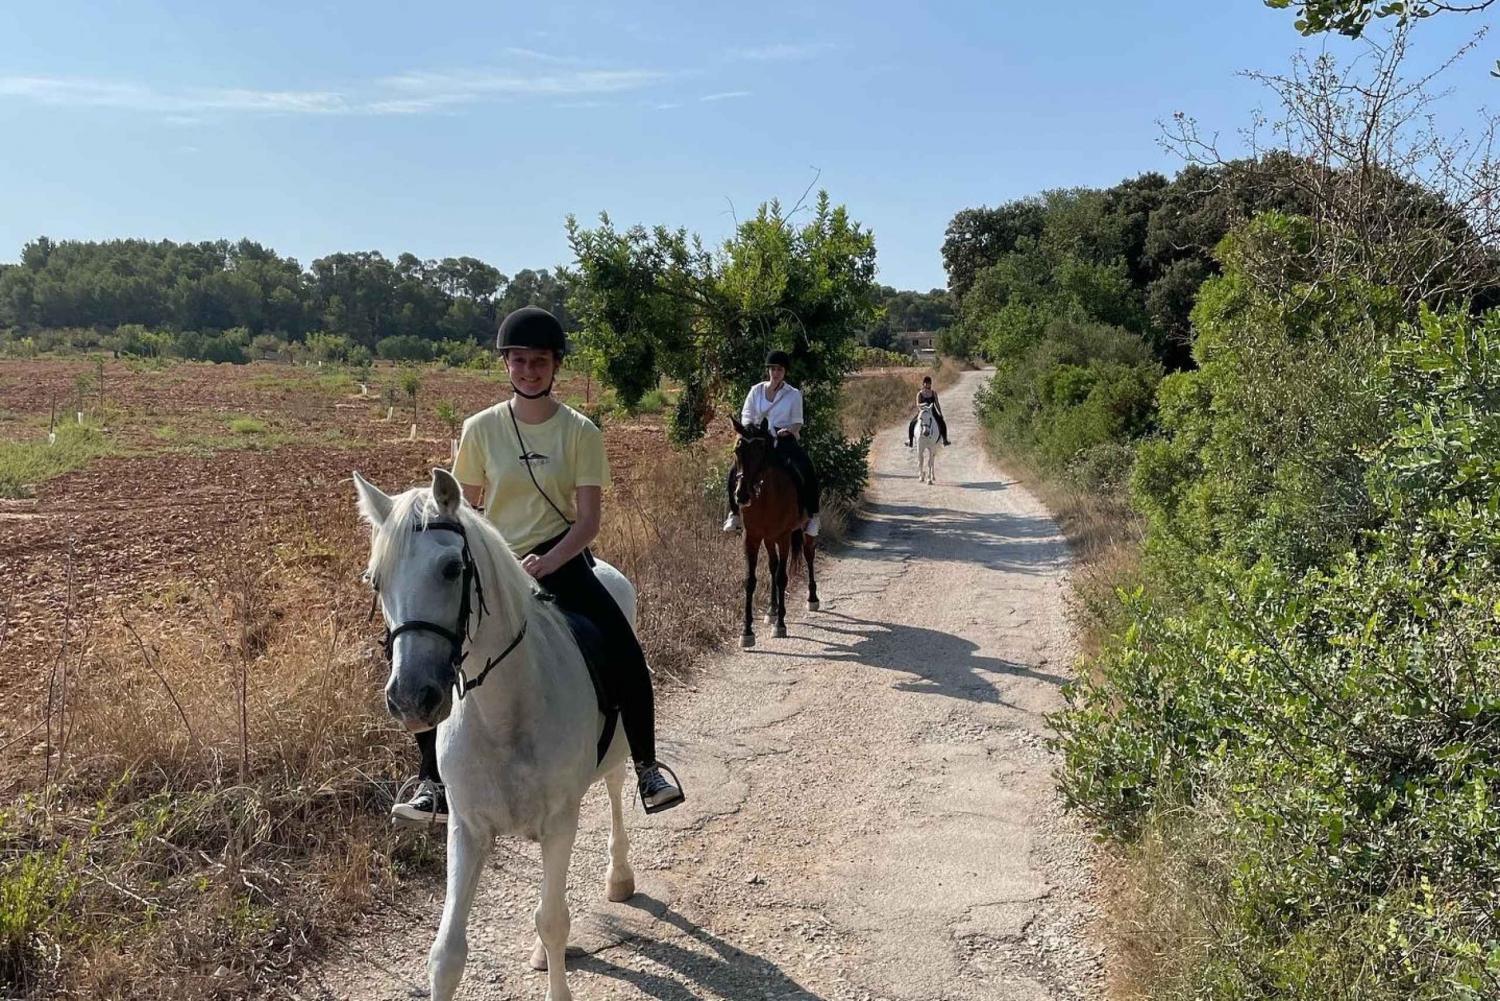 Mallorca: Horse Riding Tour Through Randa Valley